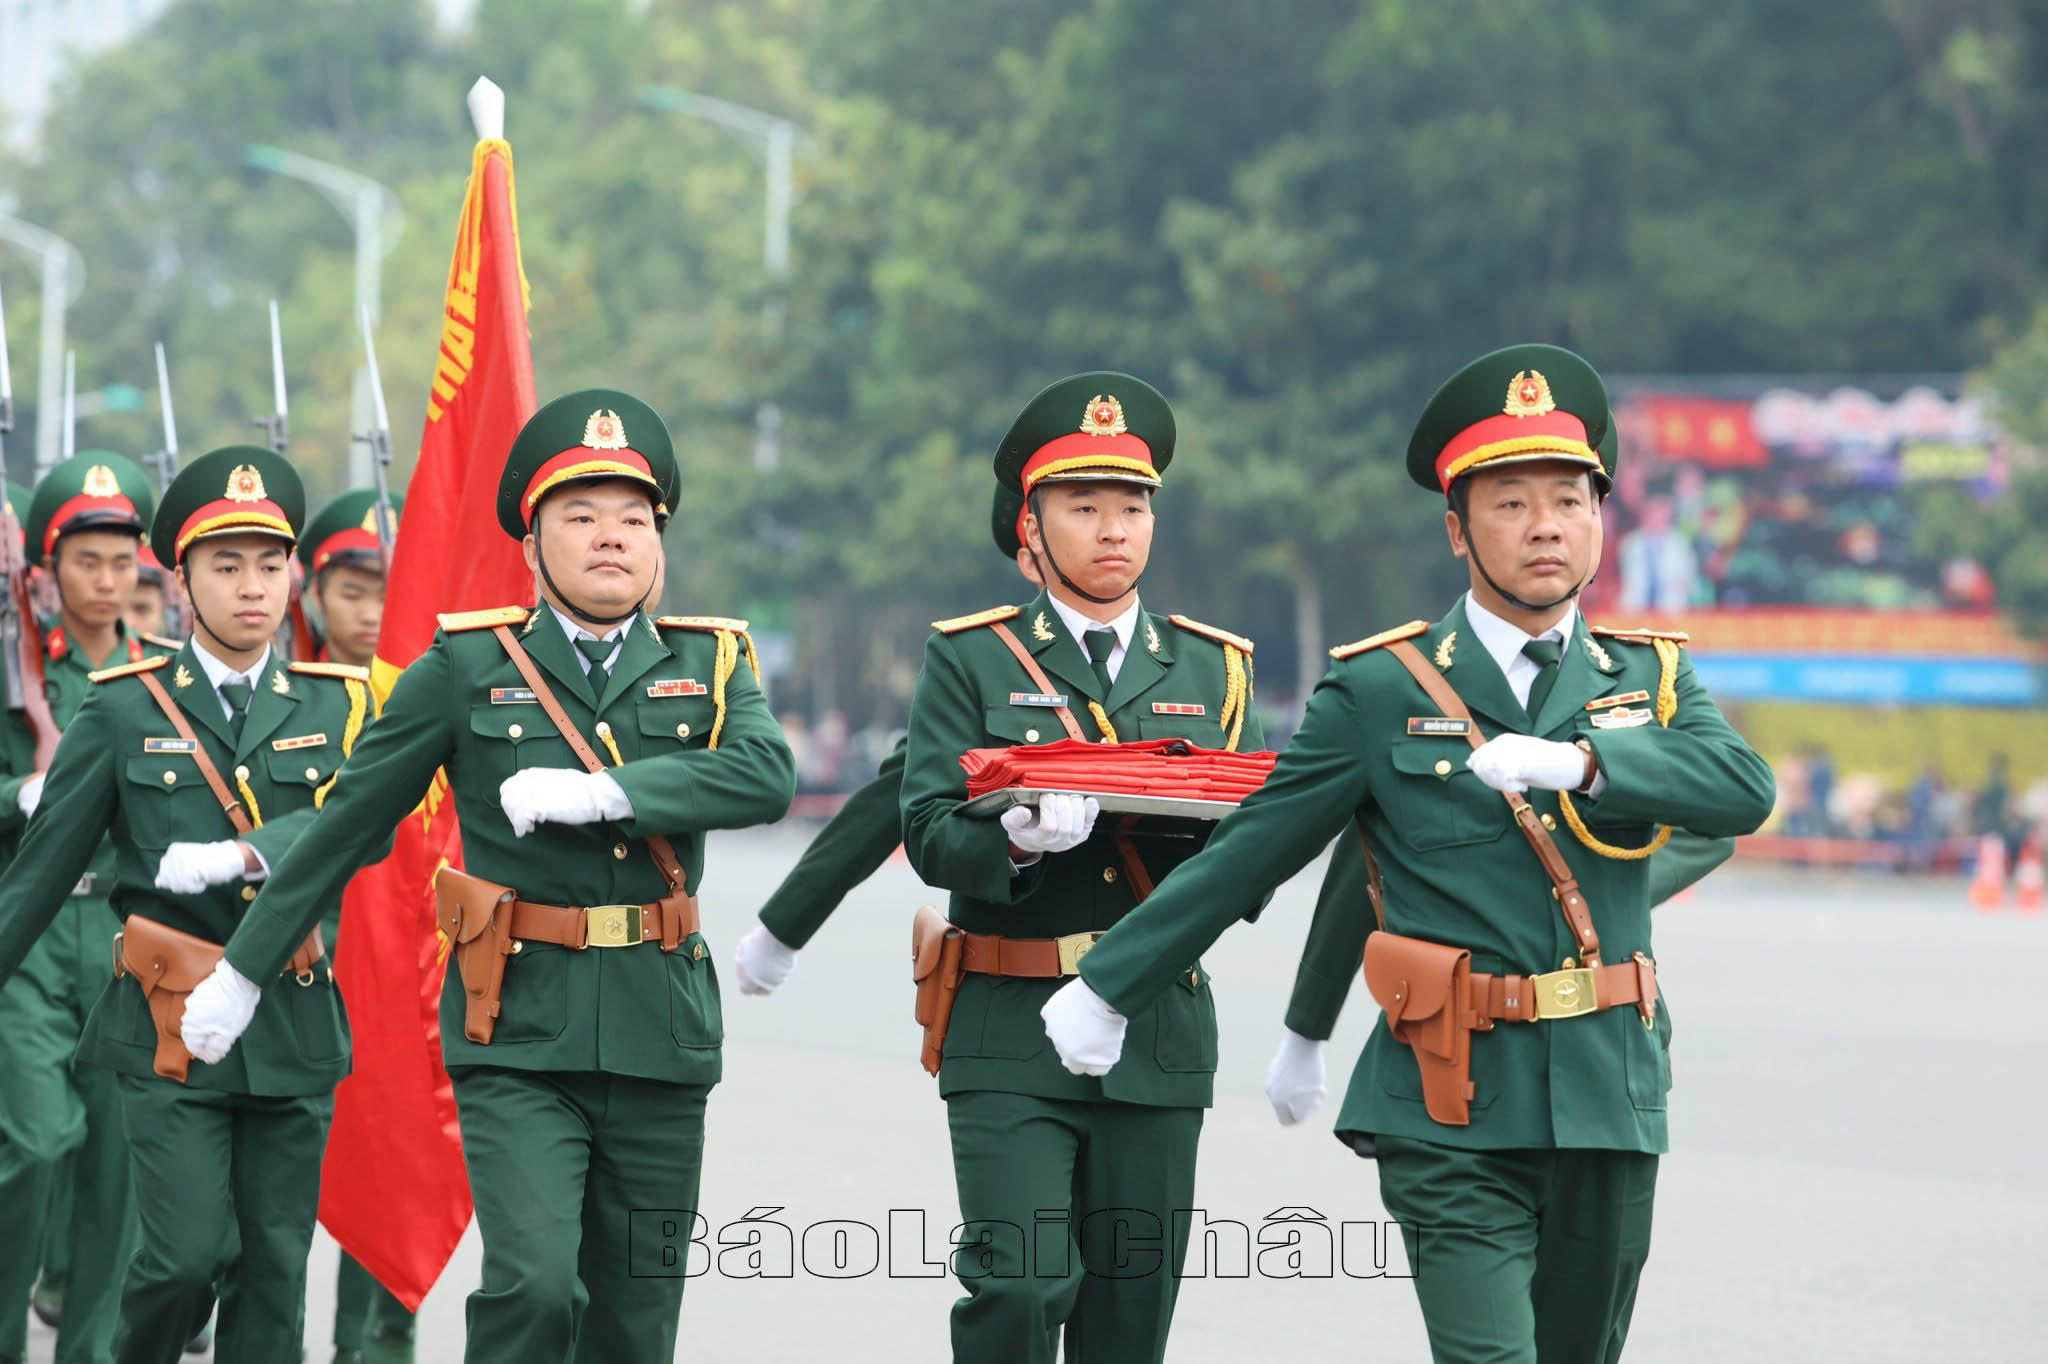 Nghi thức thượng cờ Tổ quốc - Quốc kỳ Việt Nam được thực hiện bởi lực lượng vũ trang của tỉnh Lai Châu.